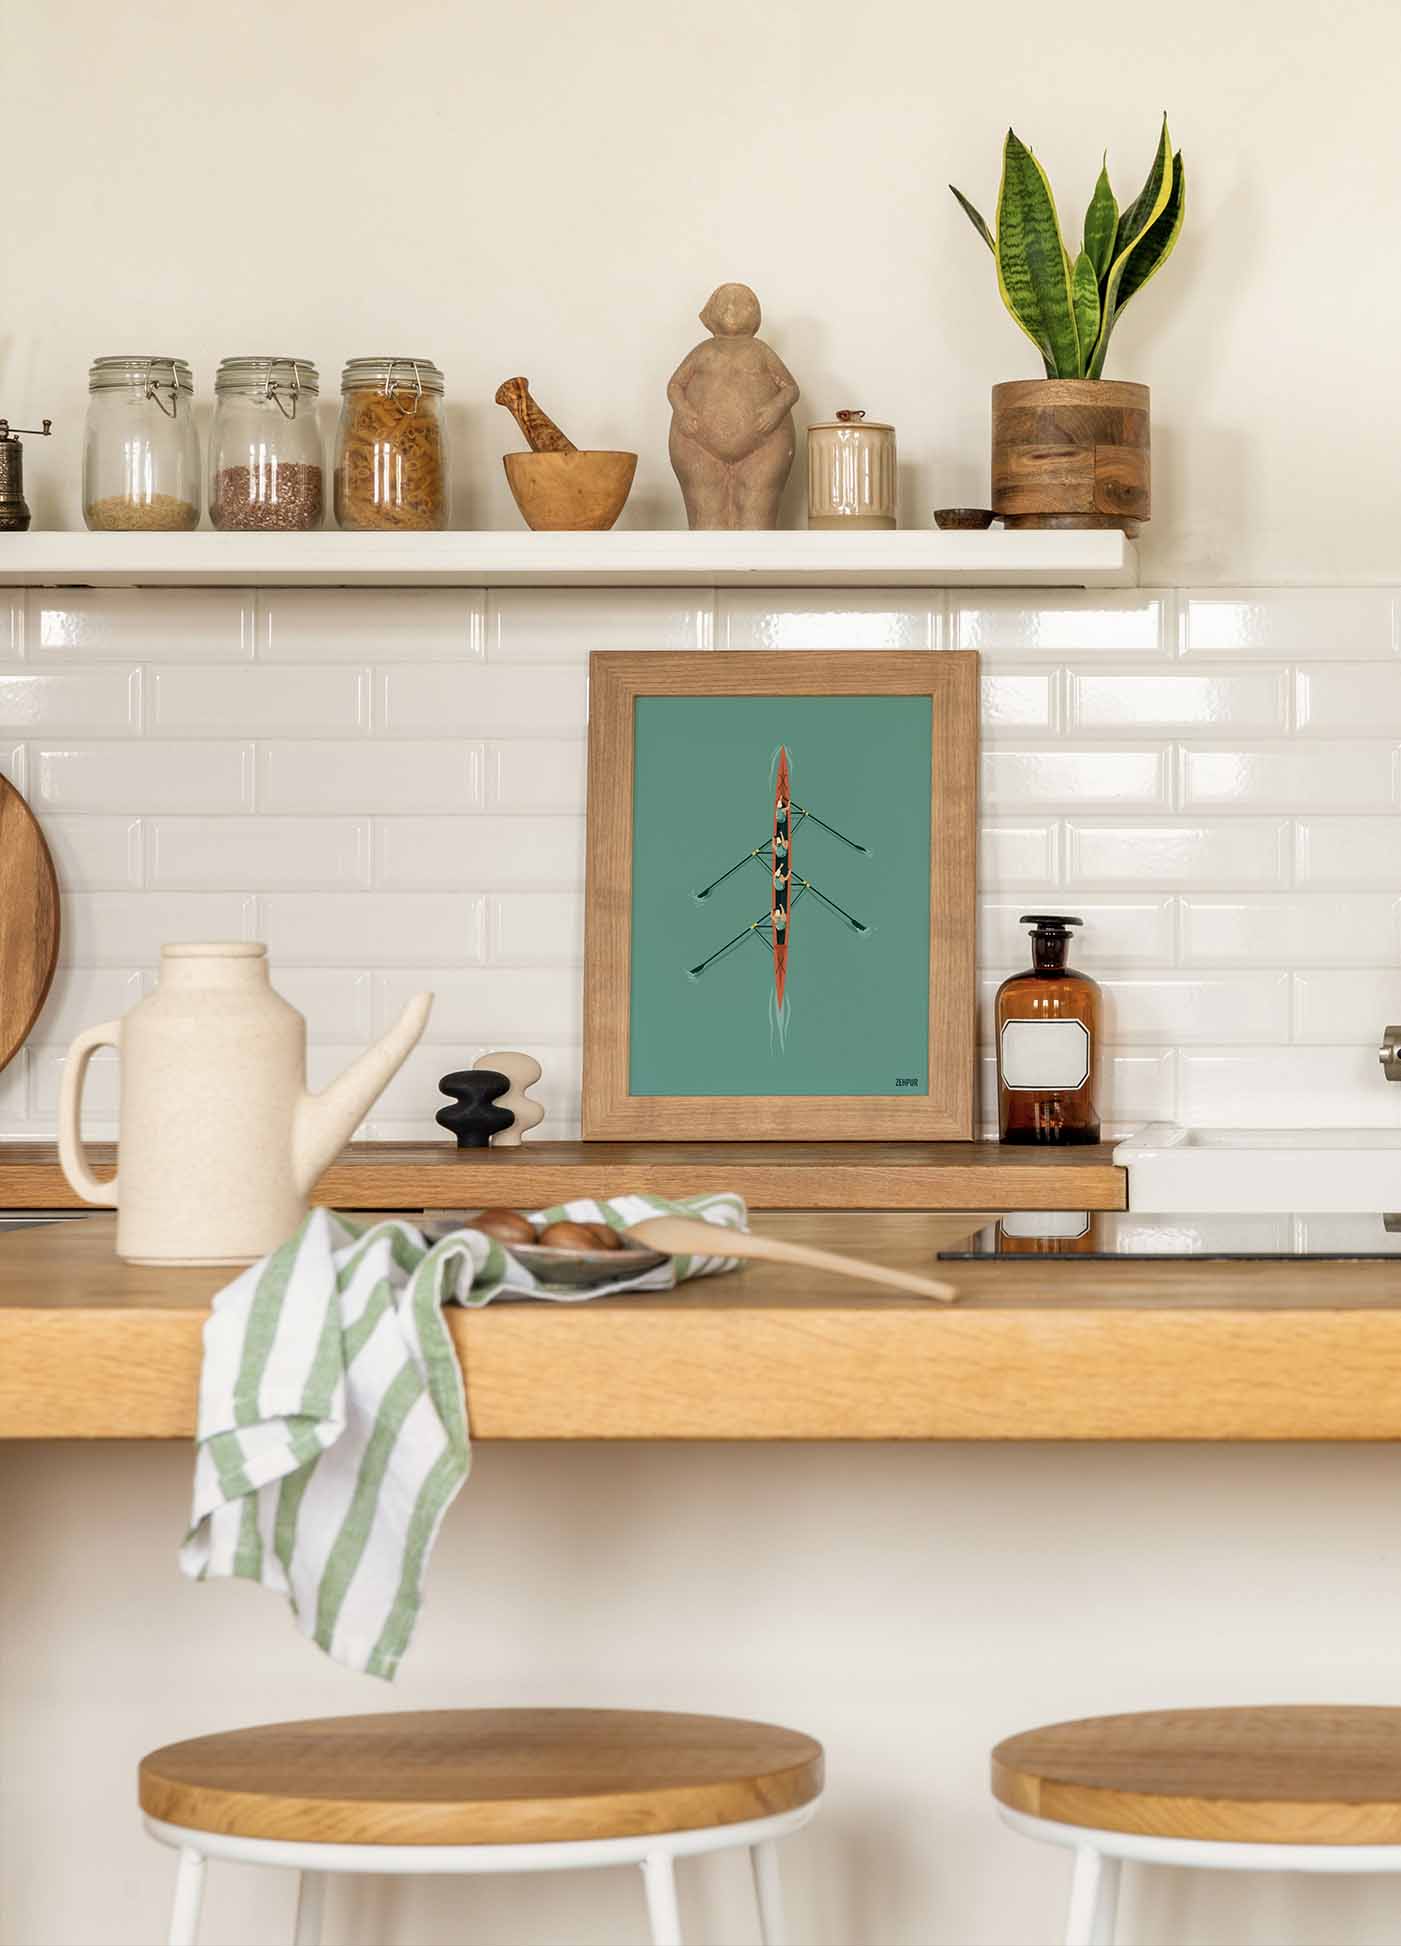 Cuisine décorée avec une affiche d'aviron, comptoir en bois avec vaisselle et ustensiles, étagère blanche avec pots et plantes